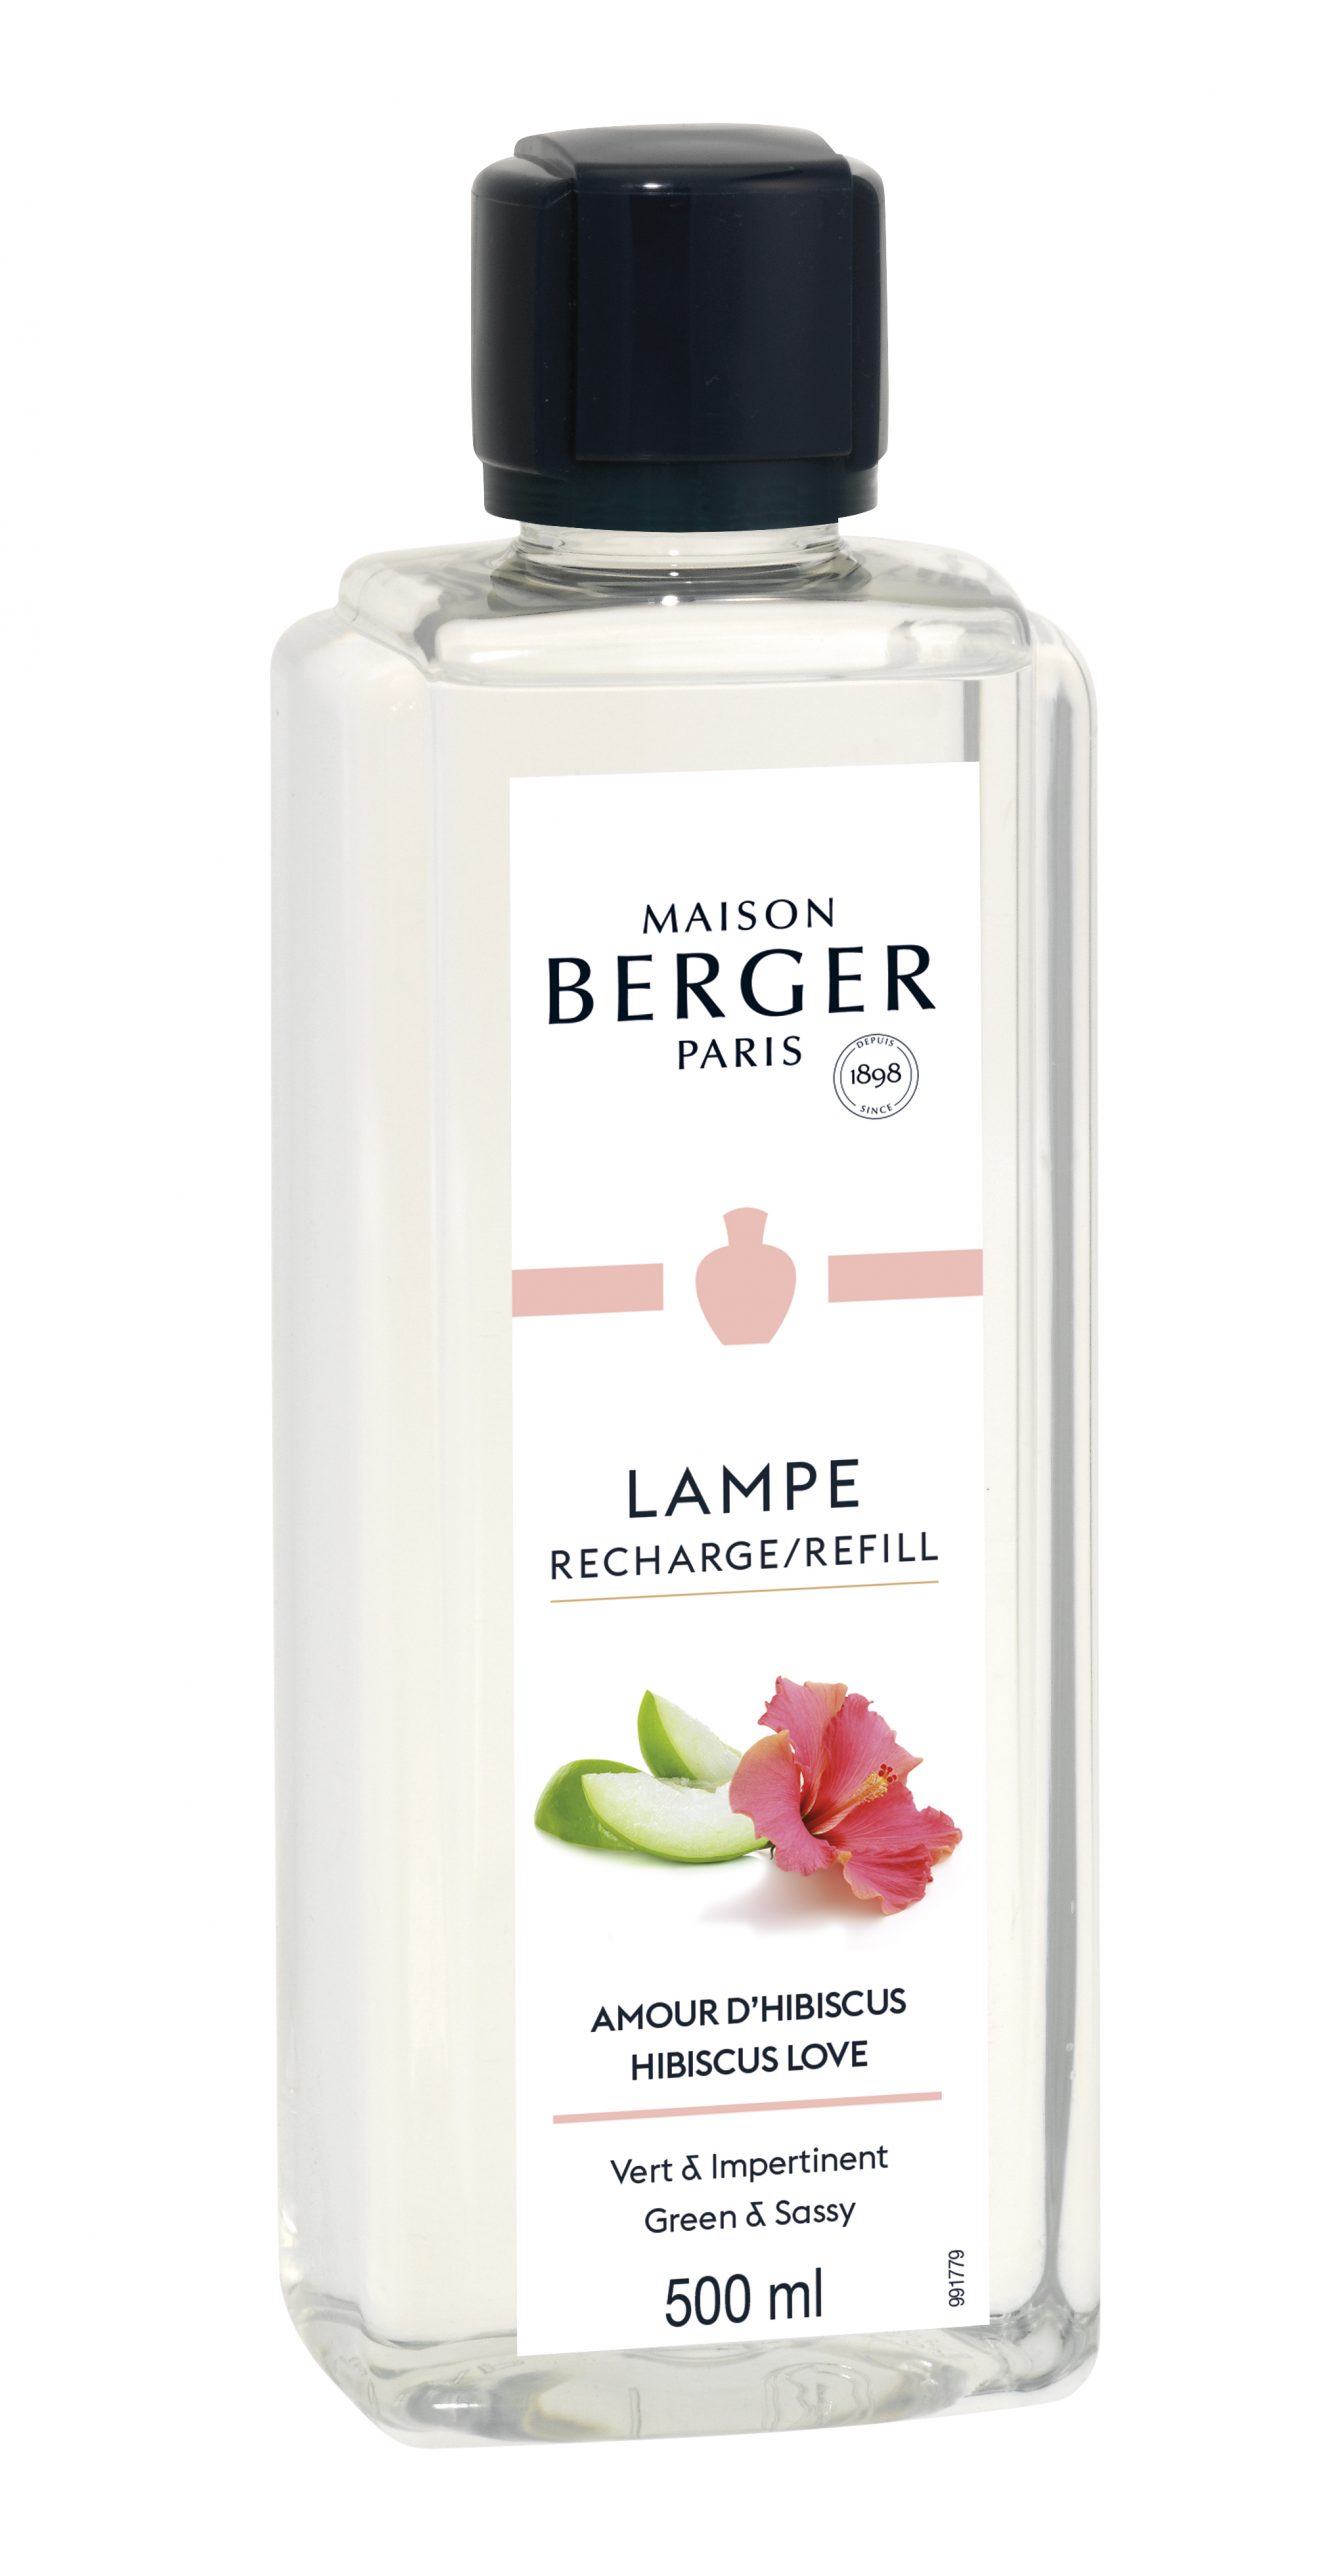 Maison Berger Paris - parfum Hibiscus Love - 500 ml